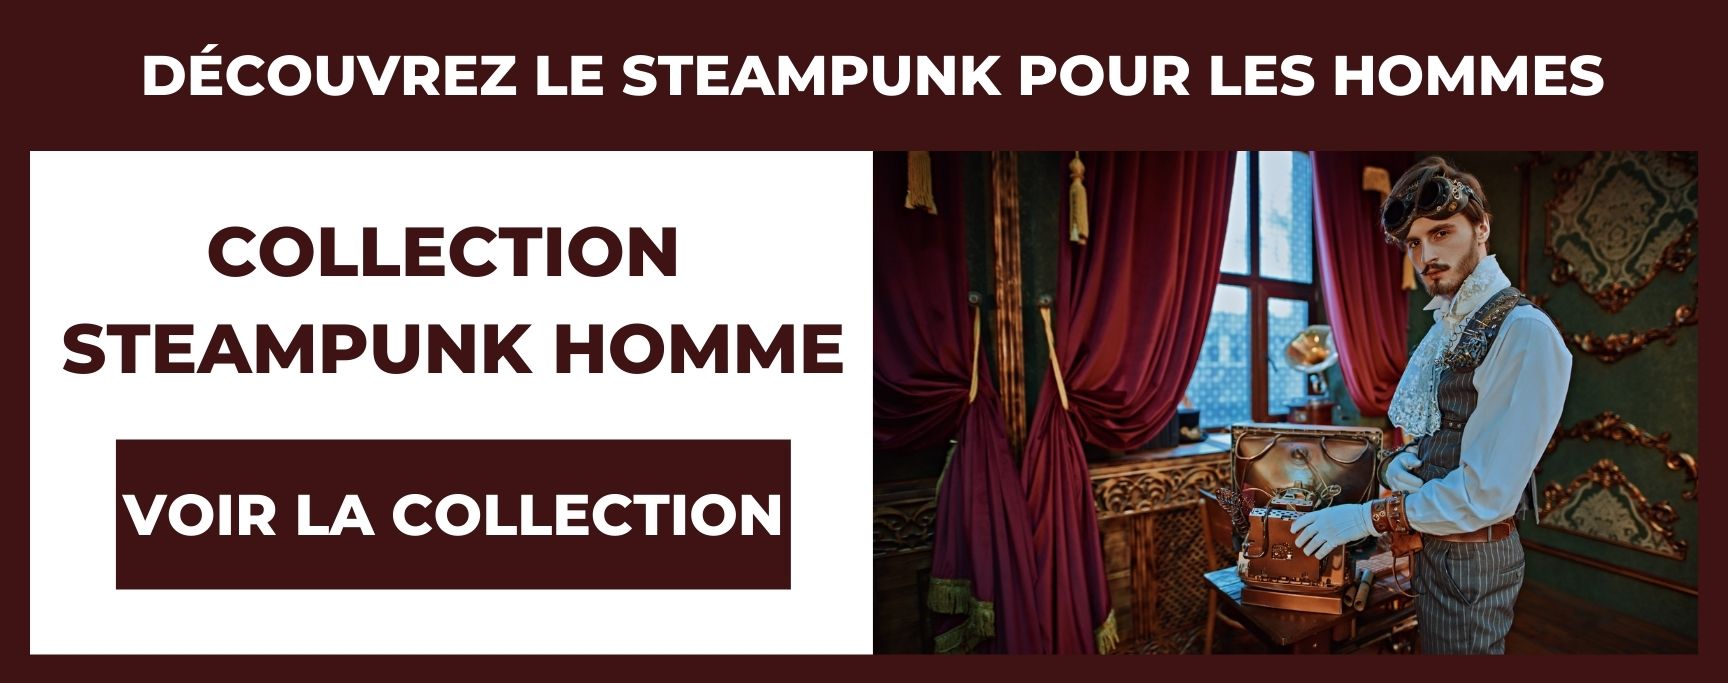 steampunk homme